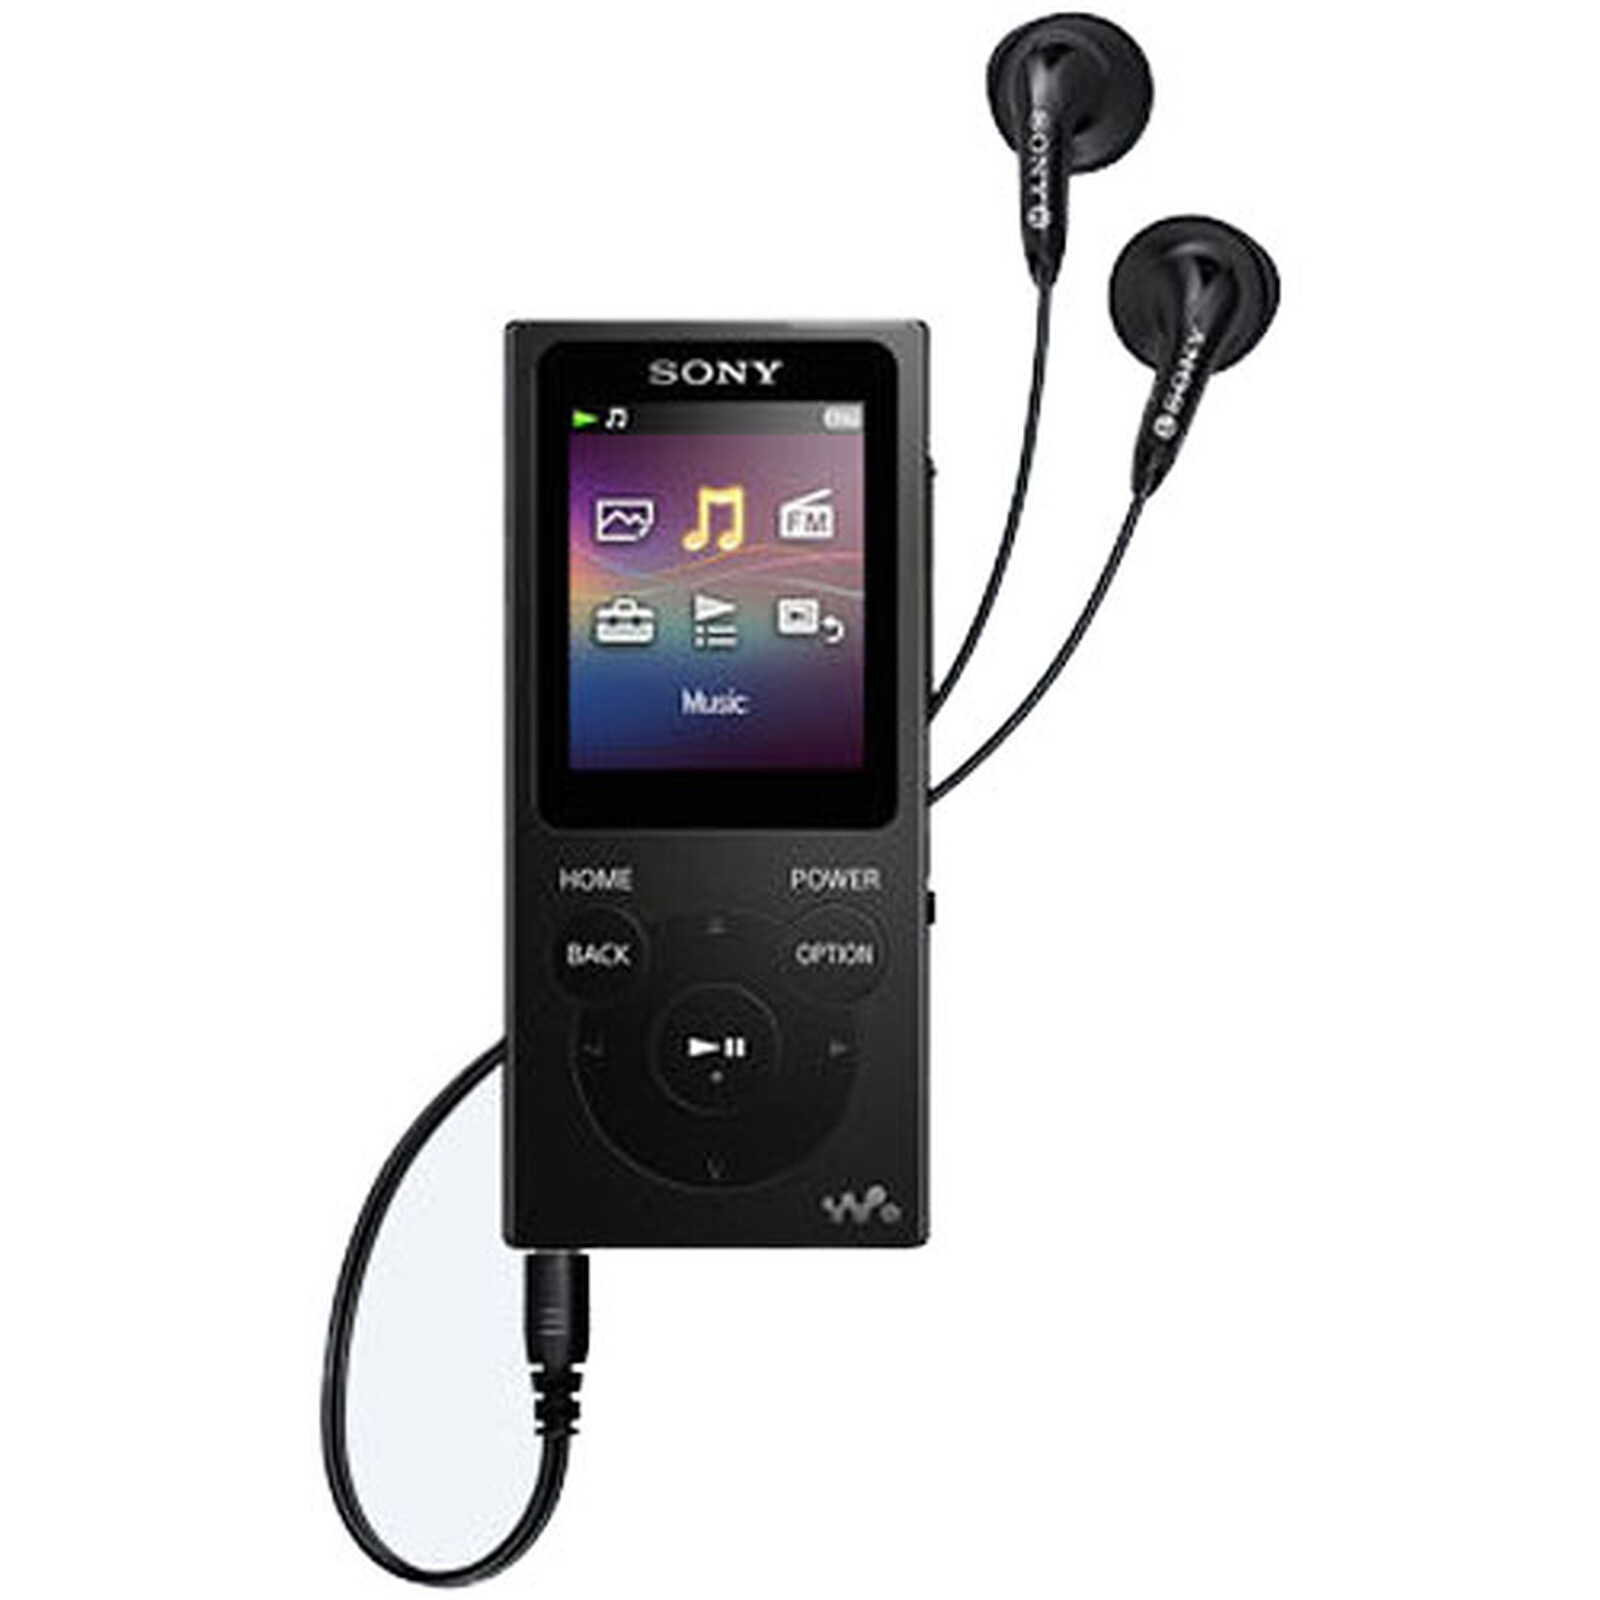 Ecouteurs Bluetooth / Lecteur MP3 Sony Walkman NW-WS623 étanche